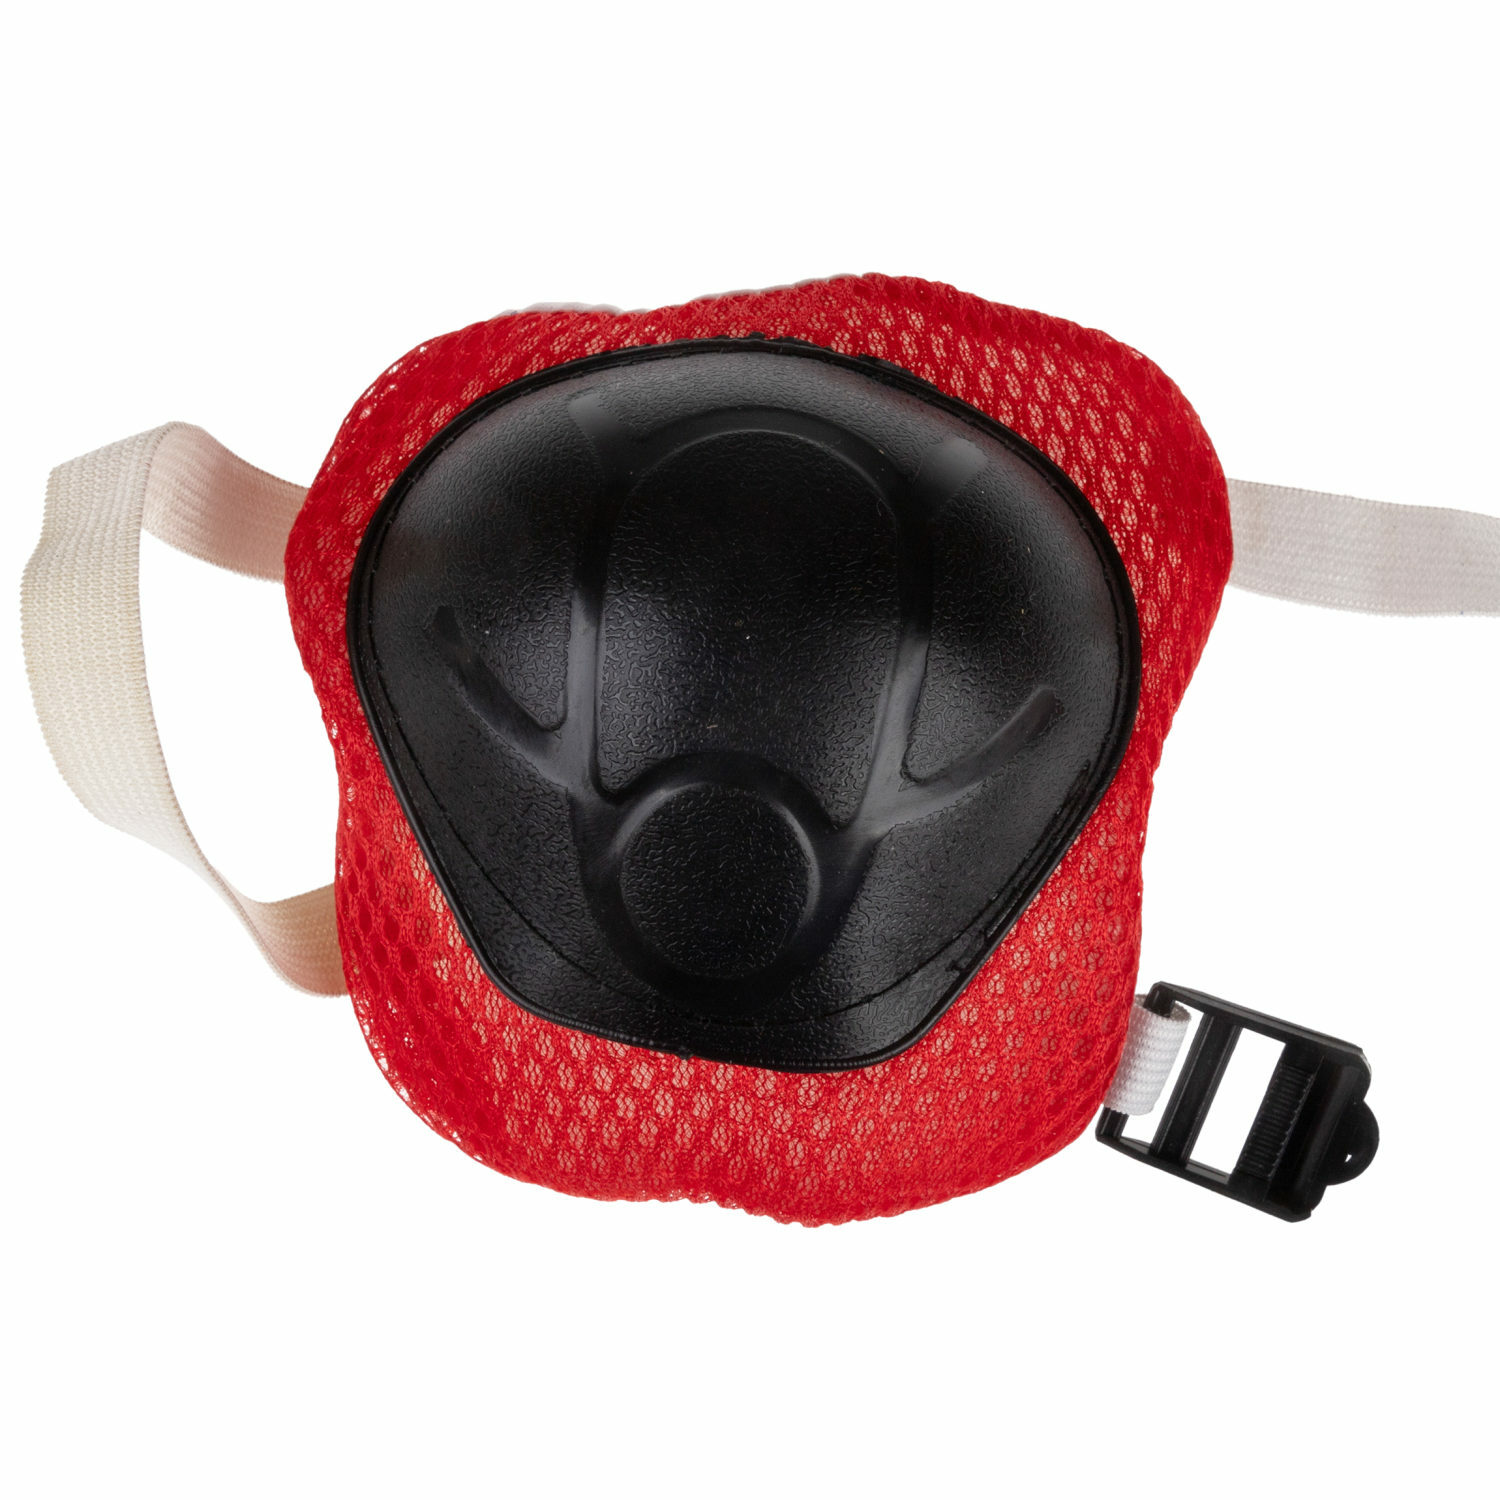 Ролики Navigator детские раздвижные 30 - 33 размер с защитой и шлемом красный - фото 11